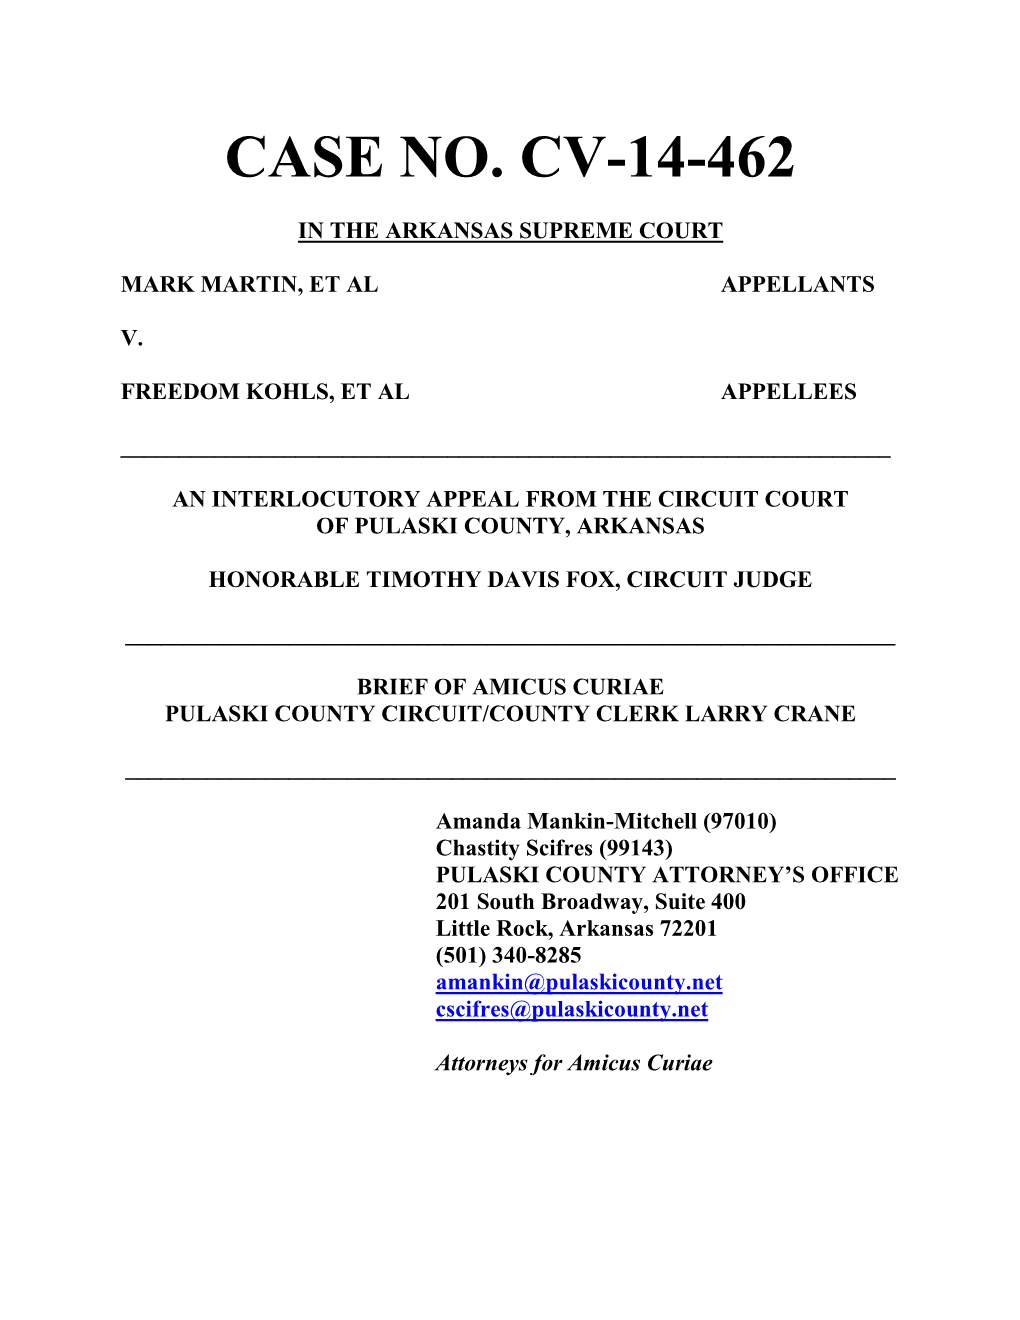 Case No. Cv-14-462